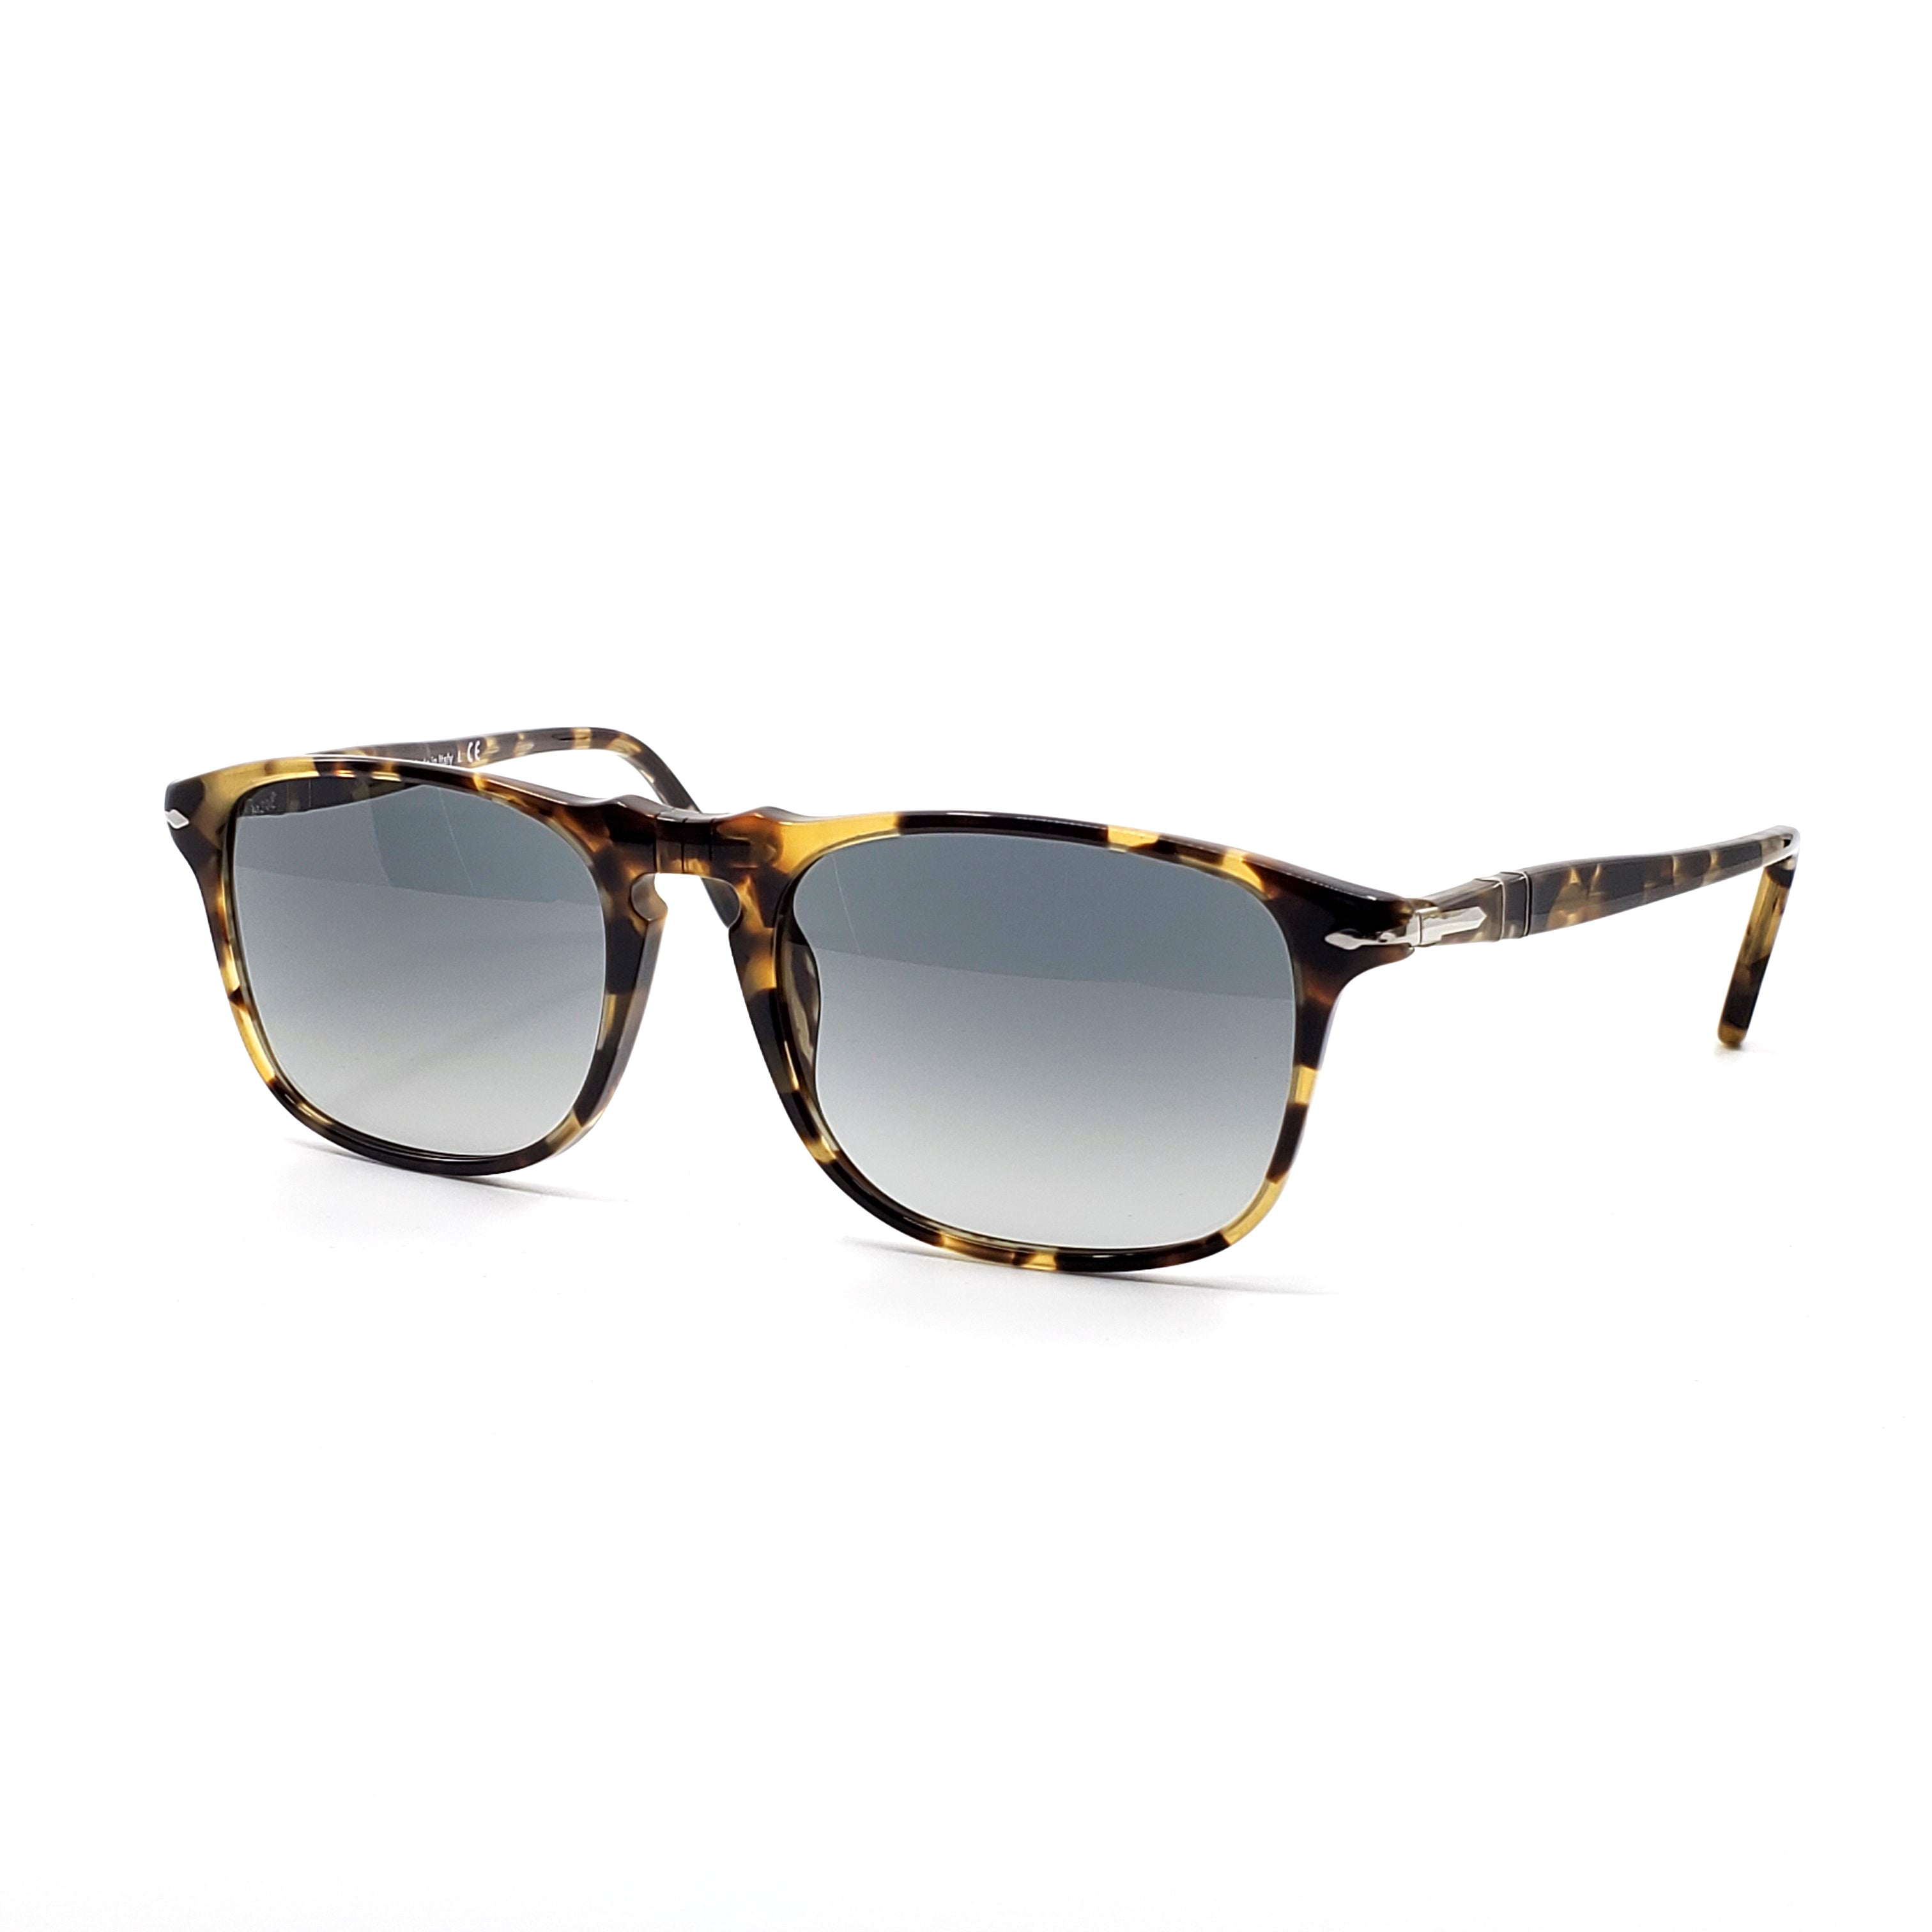 Persol Sunglasses - 649 Series - PO3059S